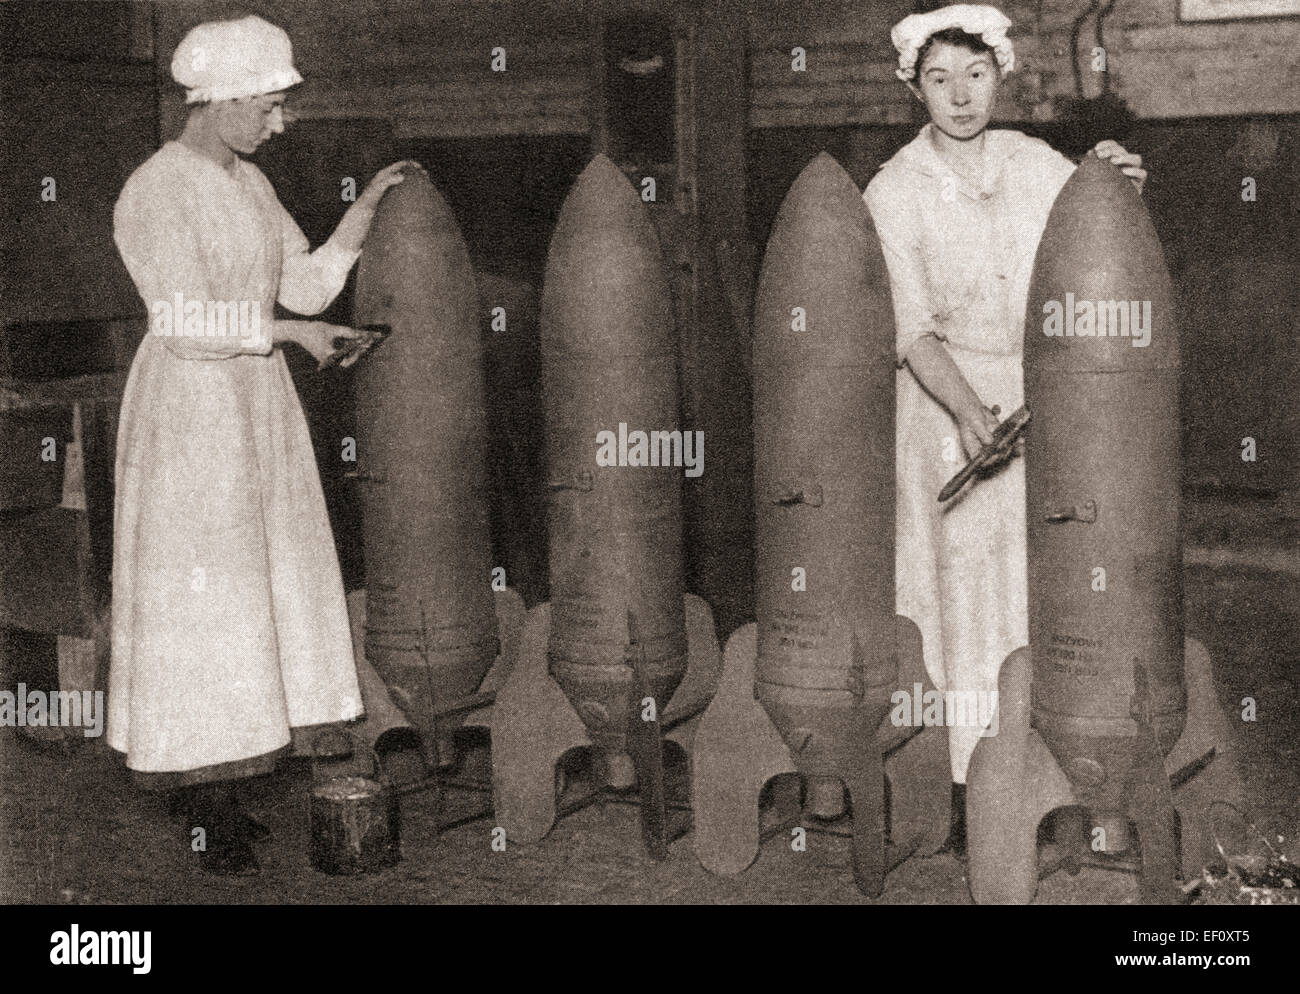 Le donne hanno preso nel corso di molti uomini di posti di lavoro durante la Prima Guerra Mondiale, lasciando così gli uomini liberi di lotta. Visto qui le donne stanno mettendo una mano di vernice sulle bombe aeree. Foto Stock